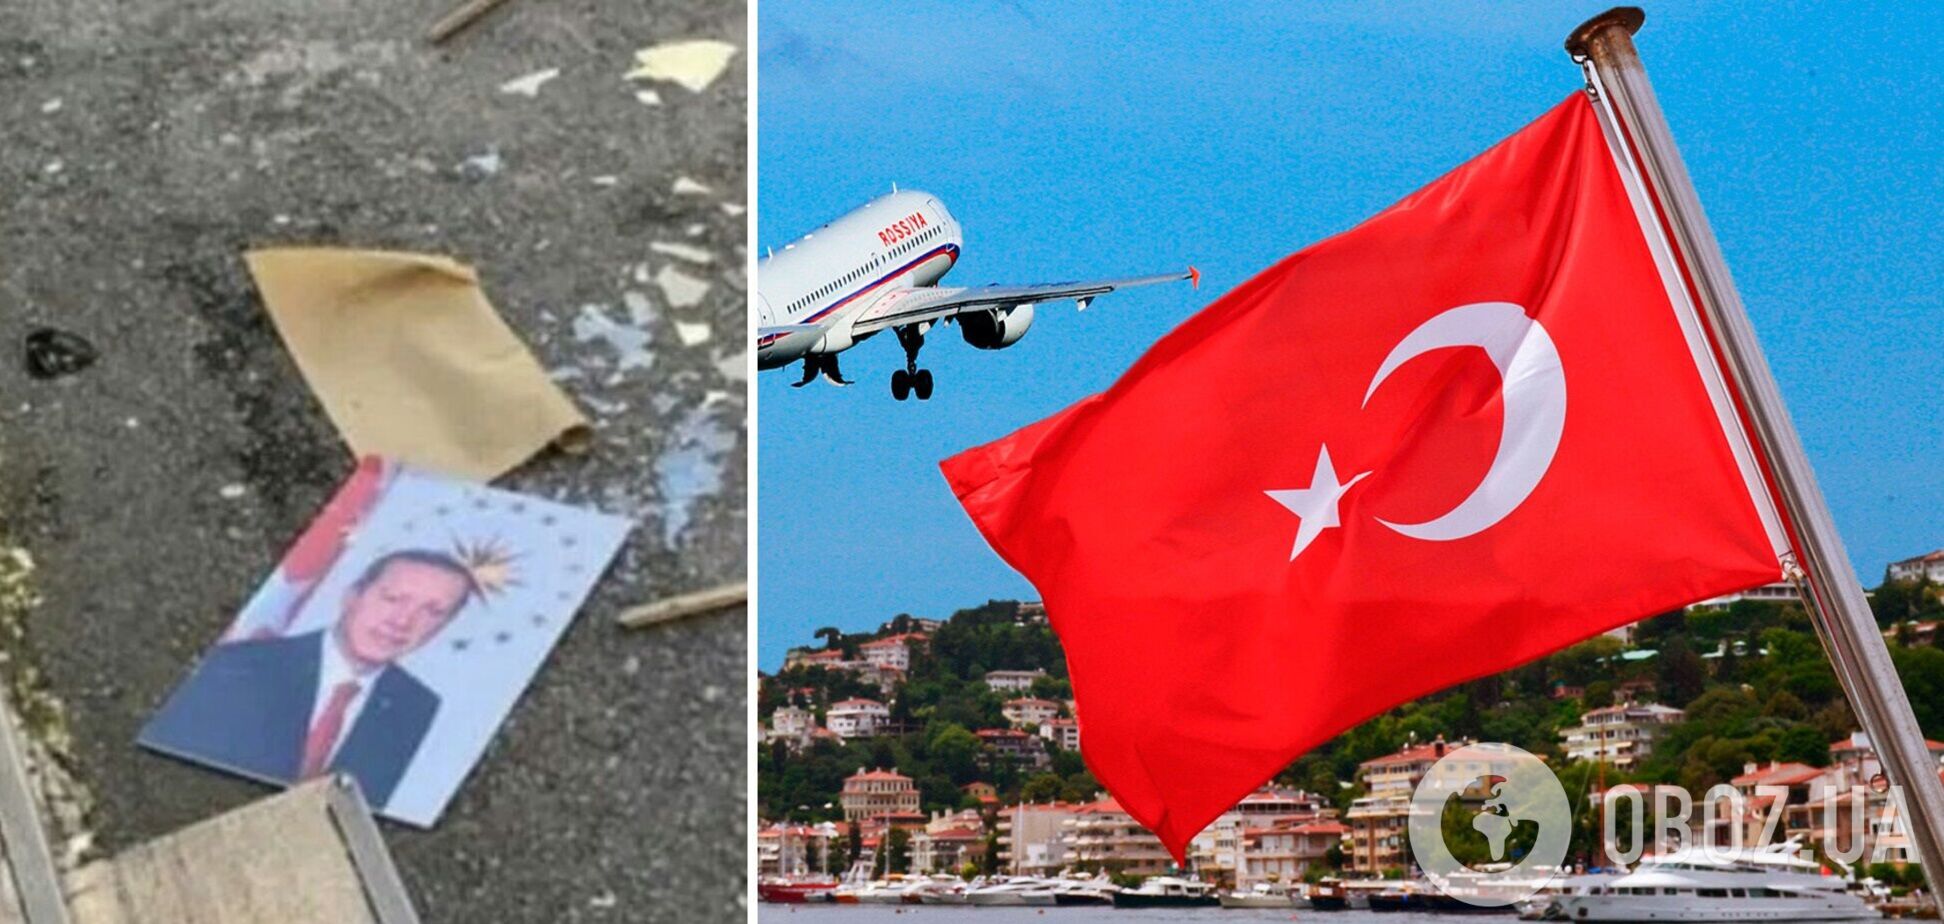 В Турции опять протестуют против финансовой политики властей, приведшей к гиперинфляции и обвалу местной валюты – лиры